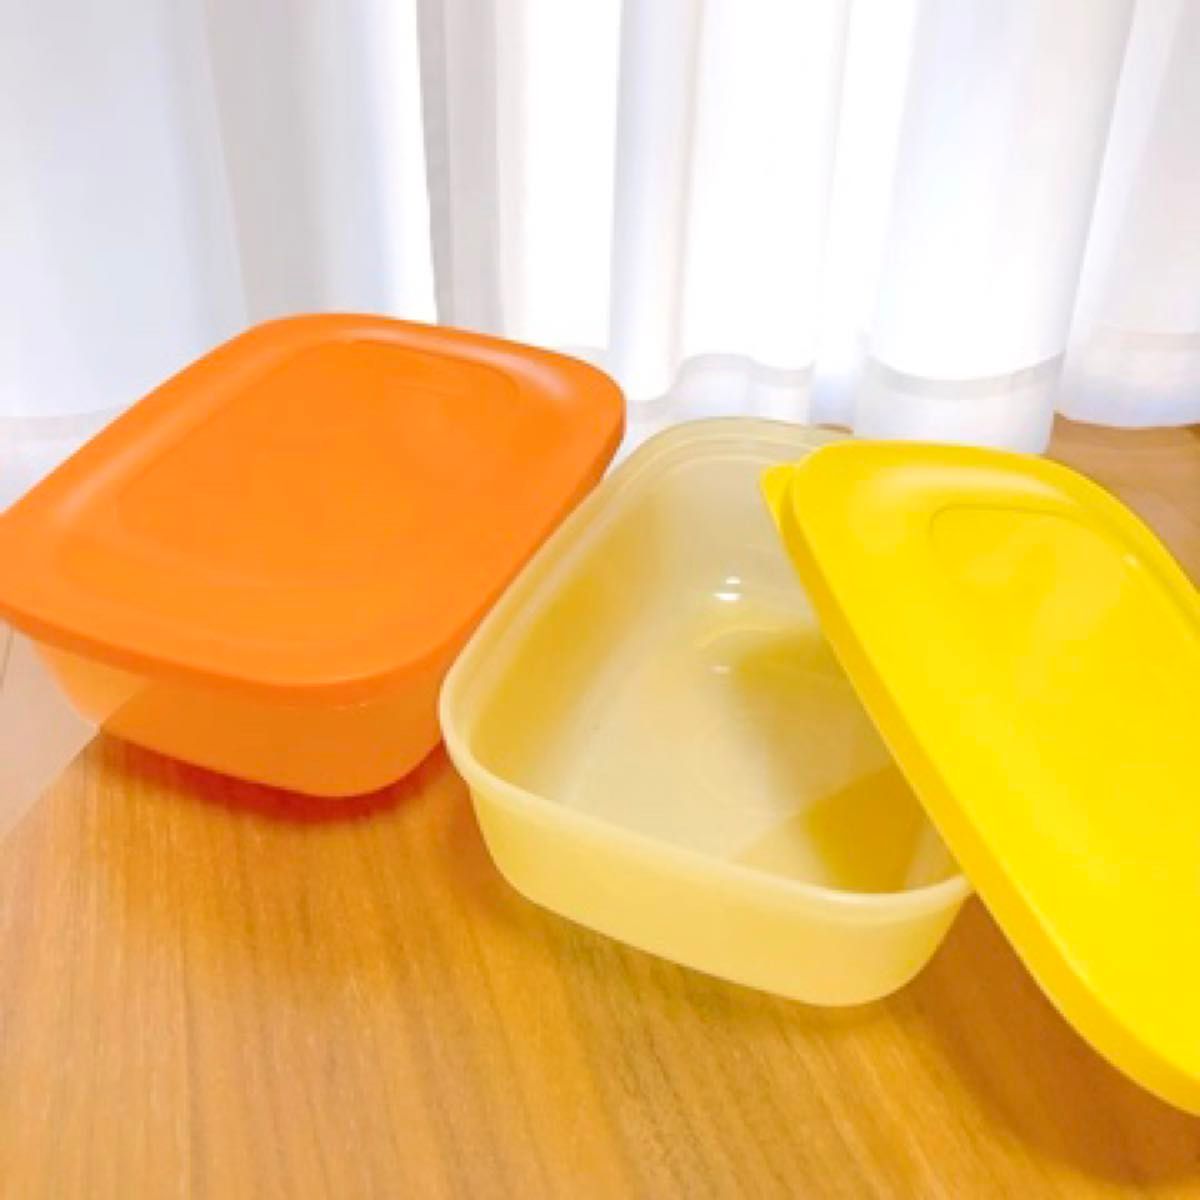 新品 未使用 タッパーウェア 2個セット イエロー オレンジ タッパーウエア tupperware 食品保存容器